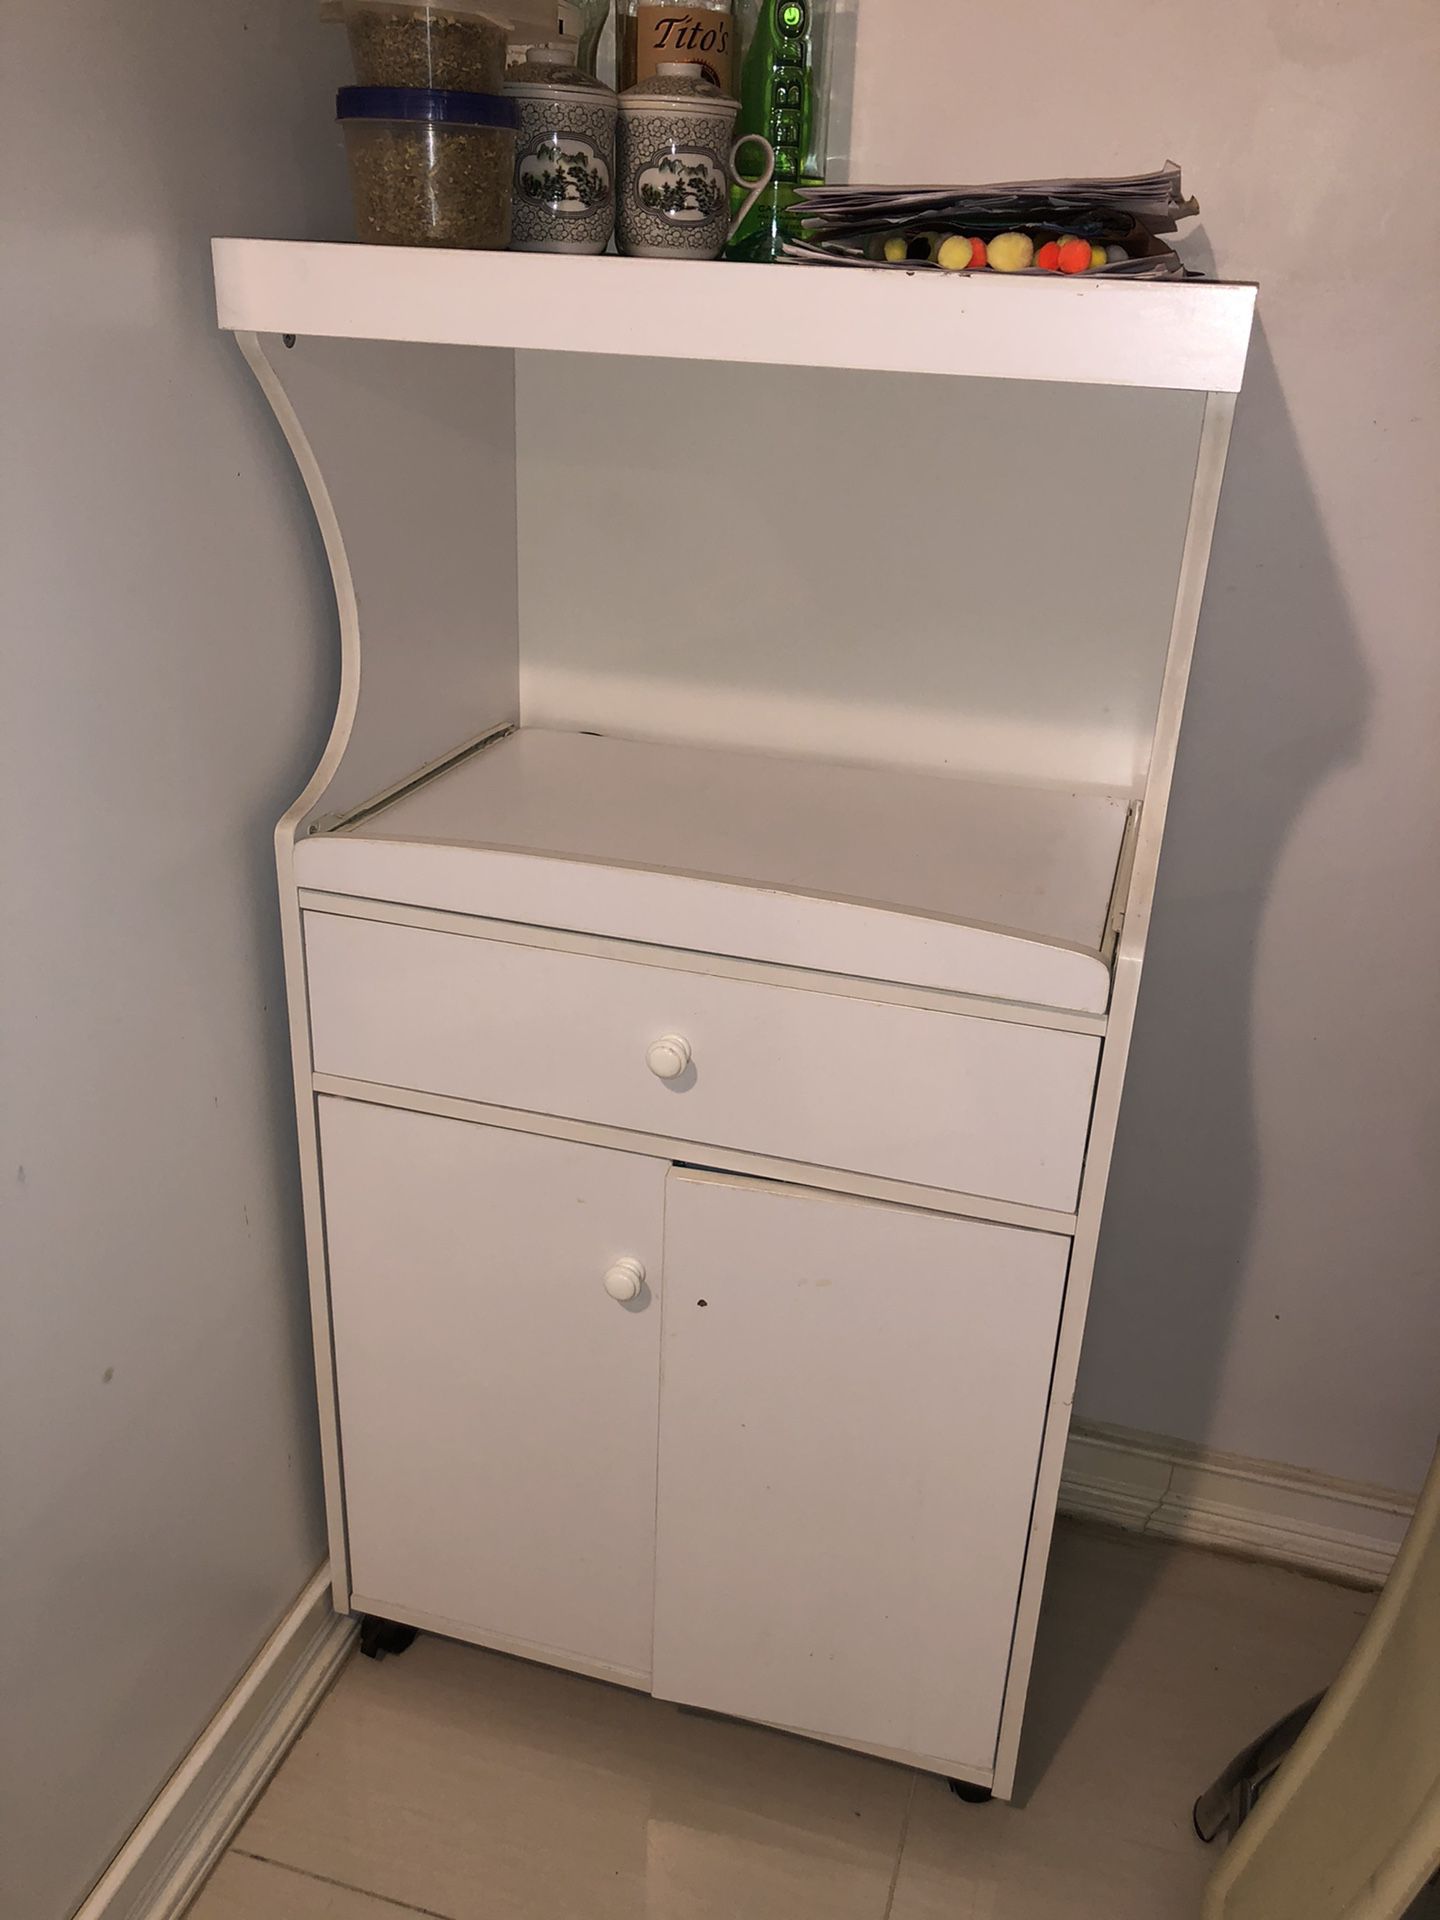 White cabinet kitchen microwave drawer storage